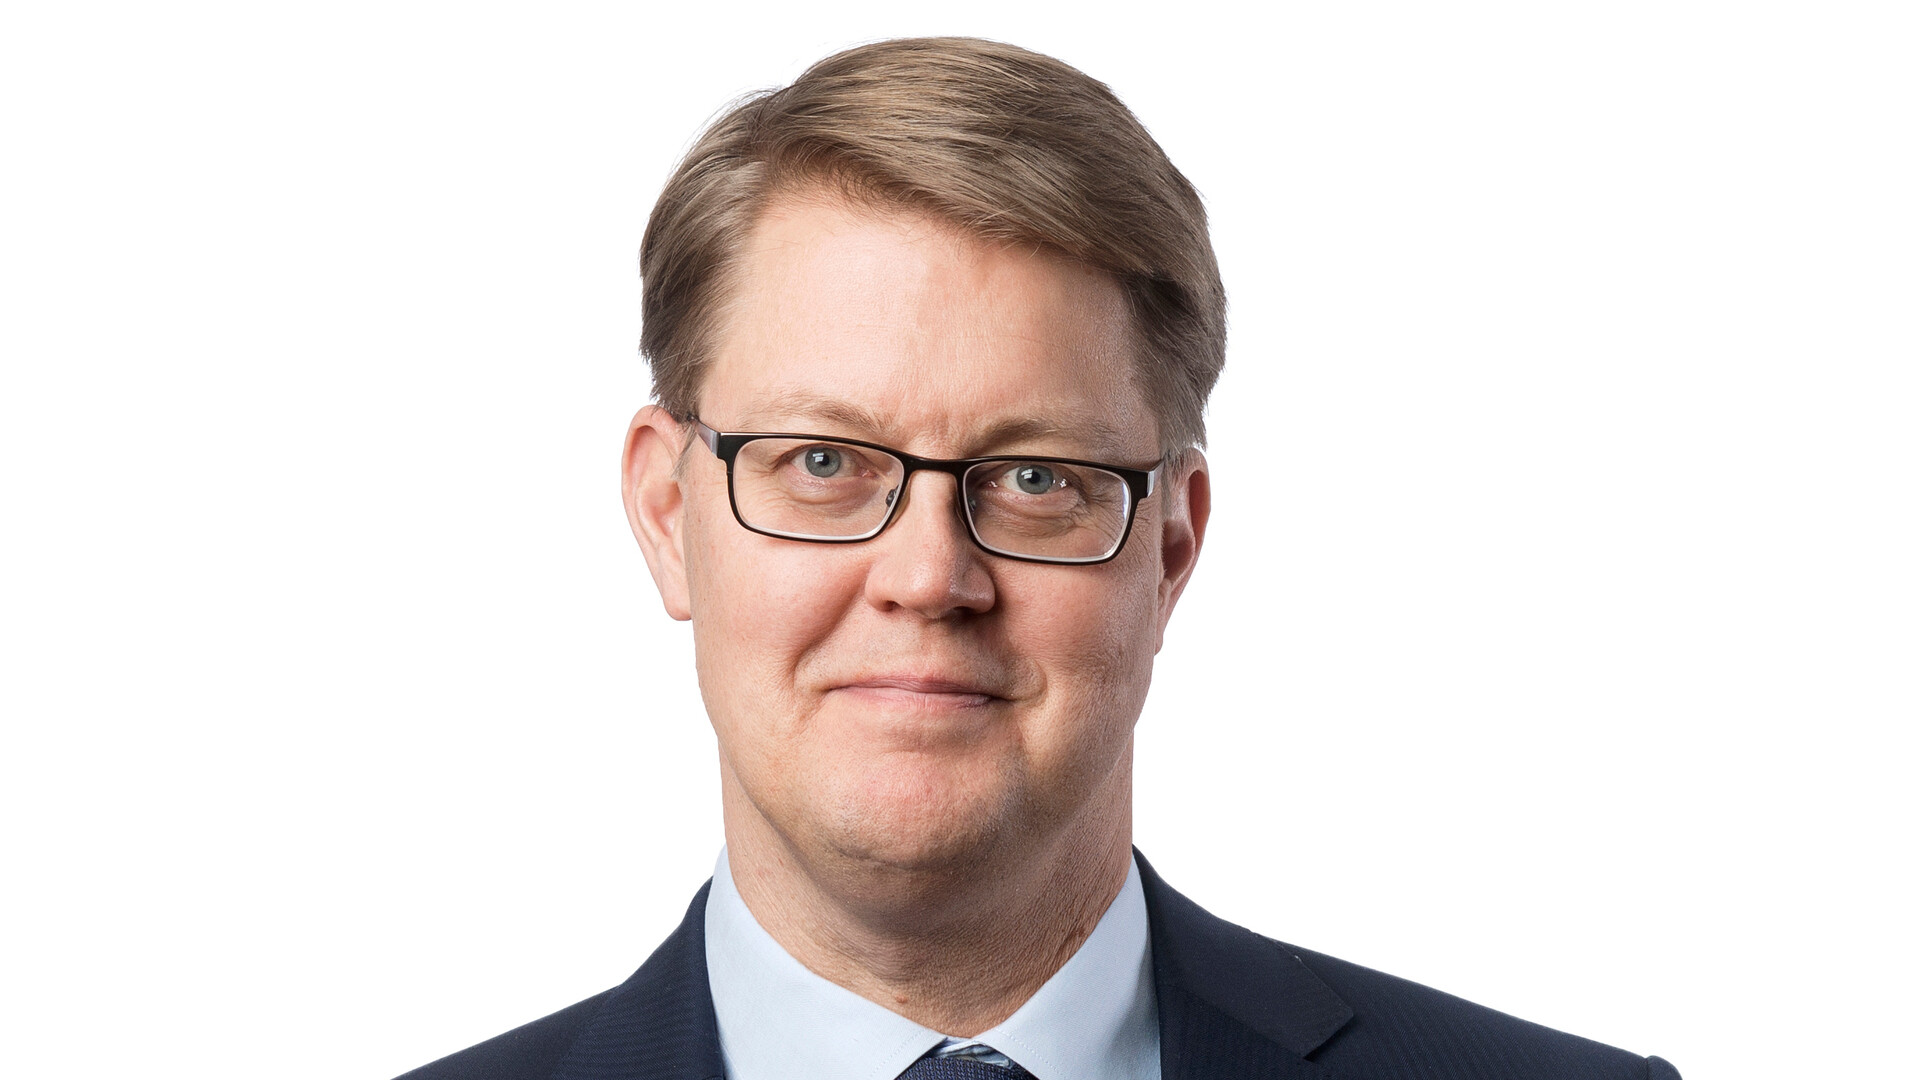 Jens Birgersson (3)
CEO, GM